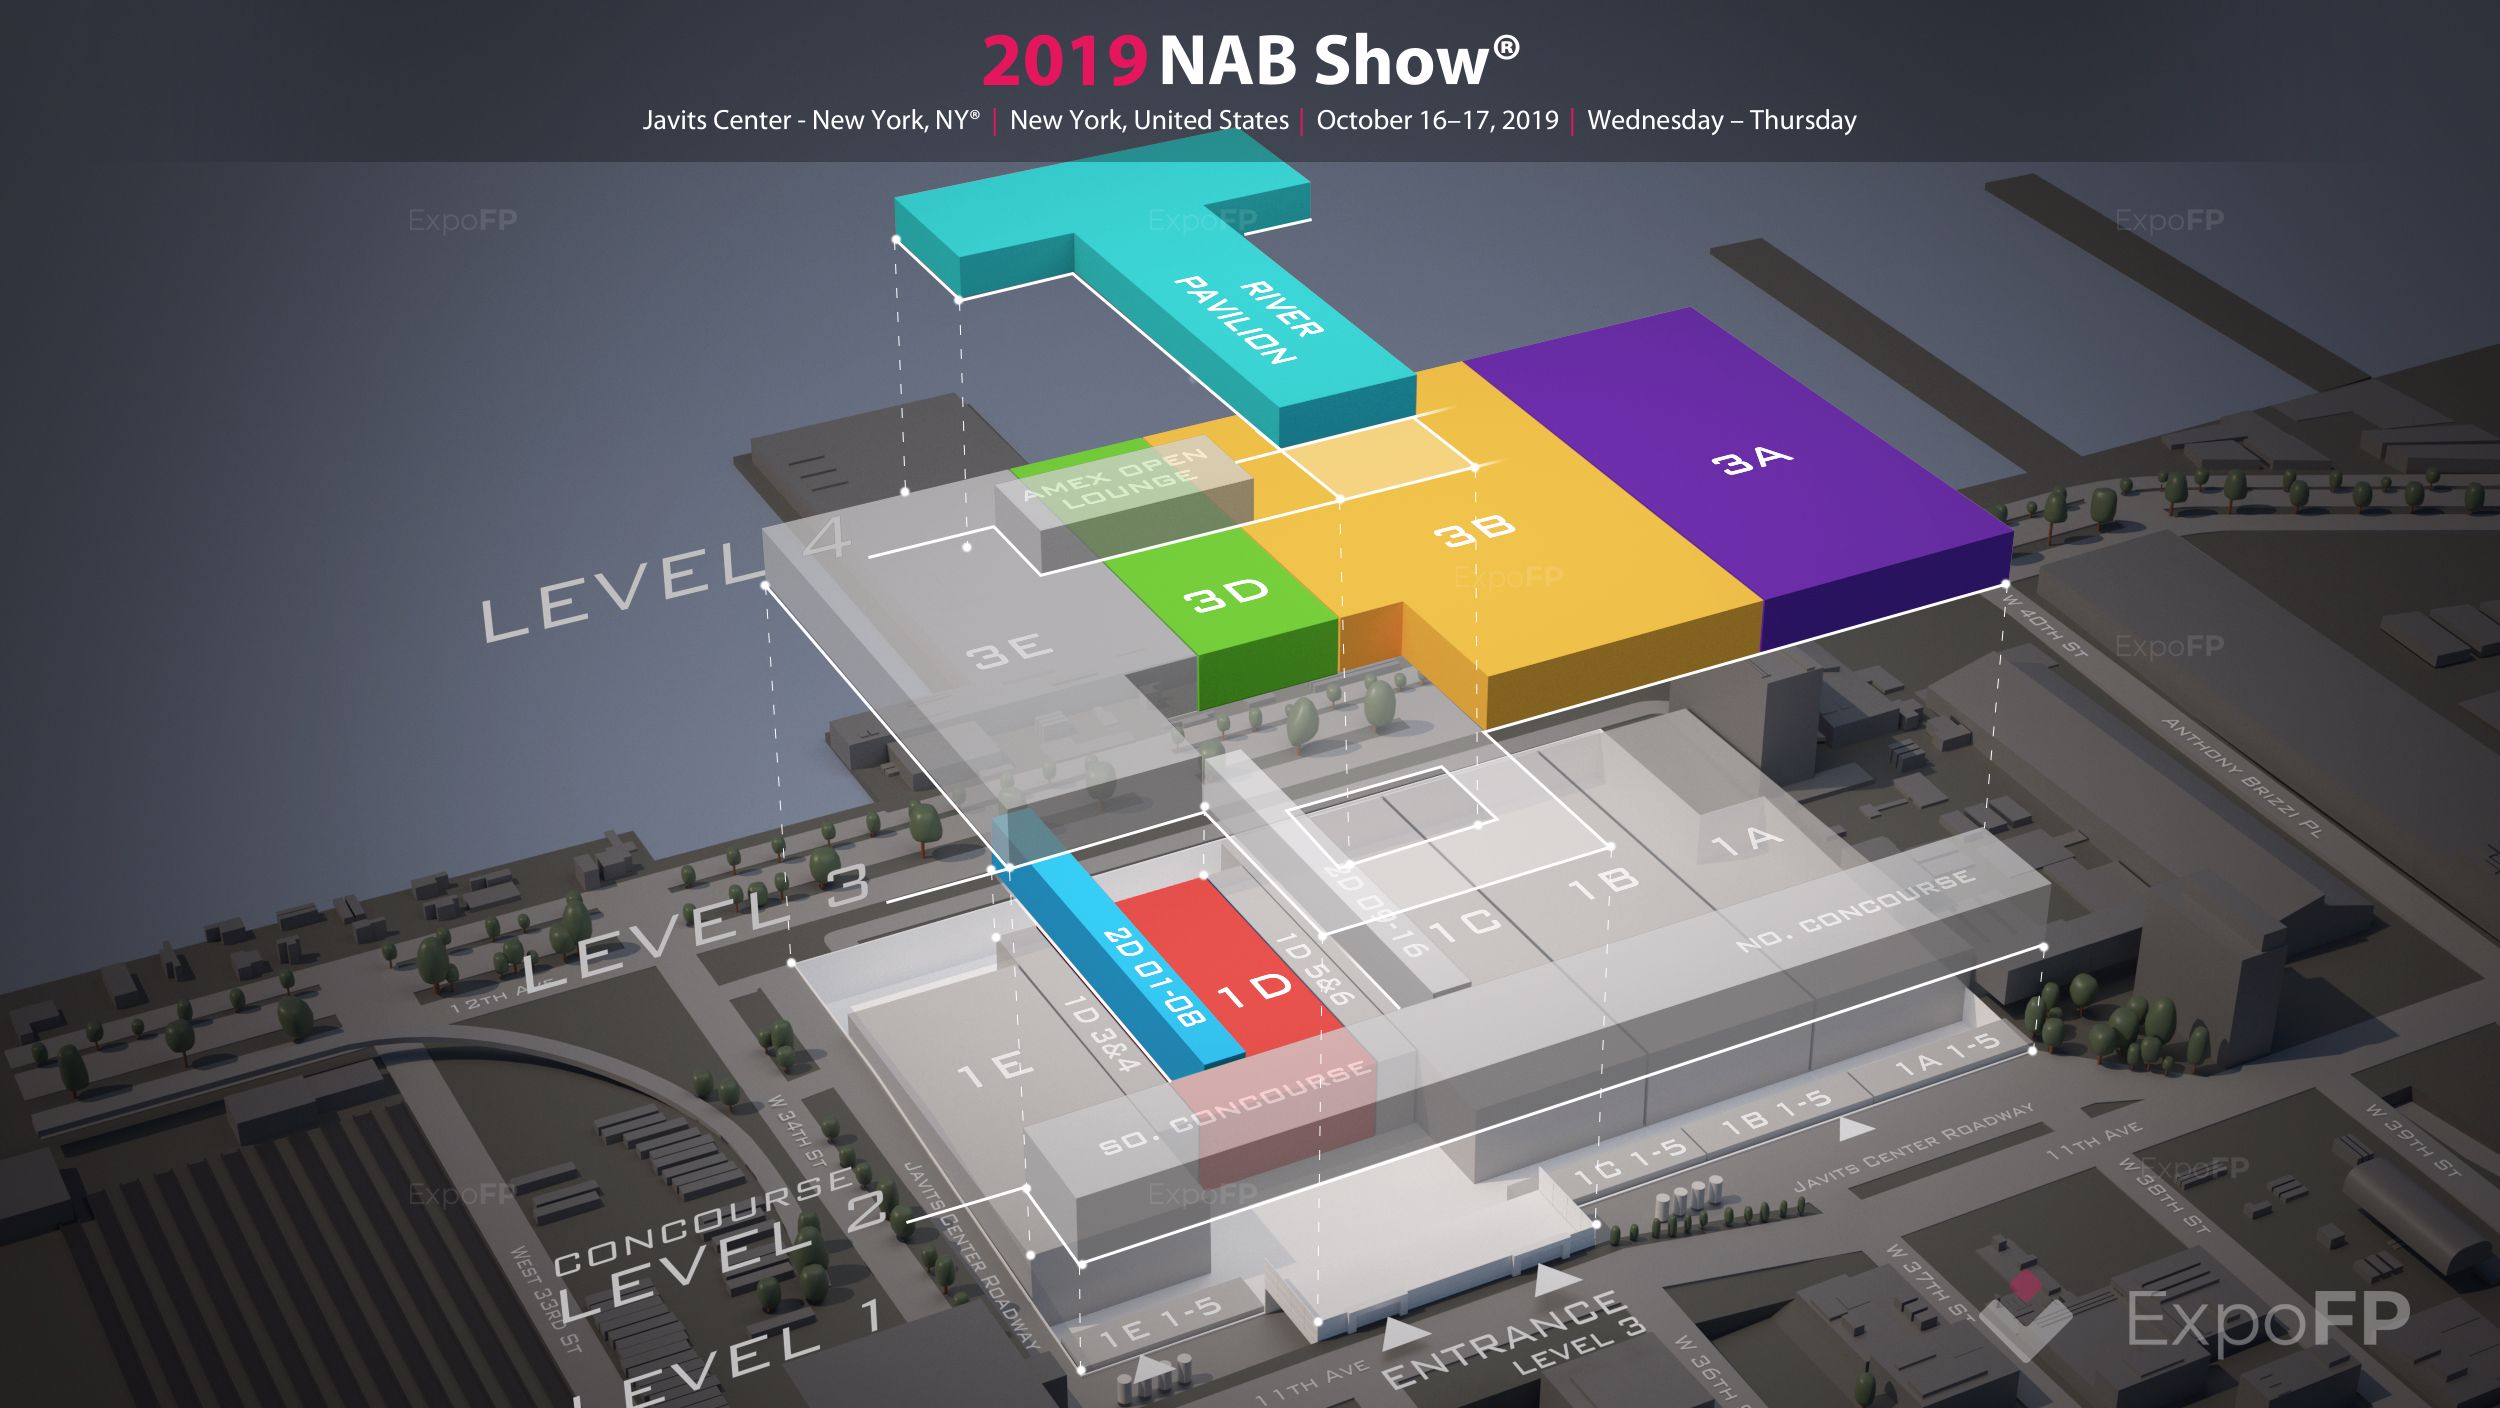 NAB Show 2019 in Javits Center New York, NY